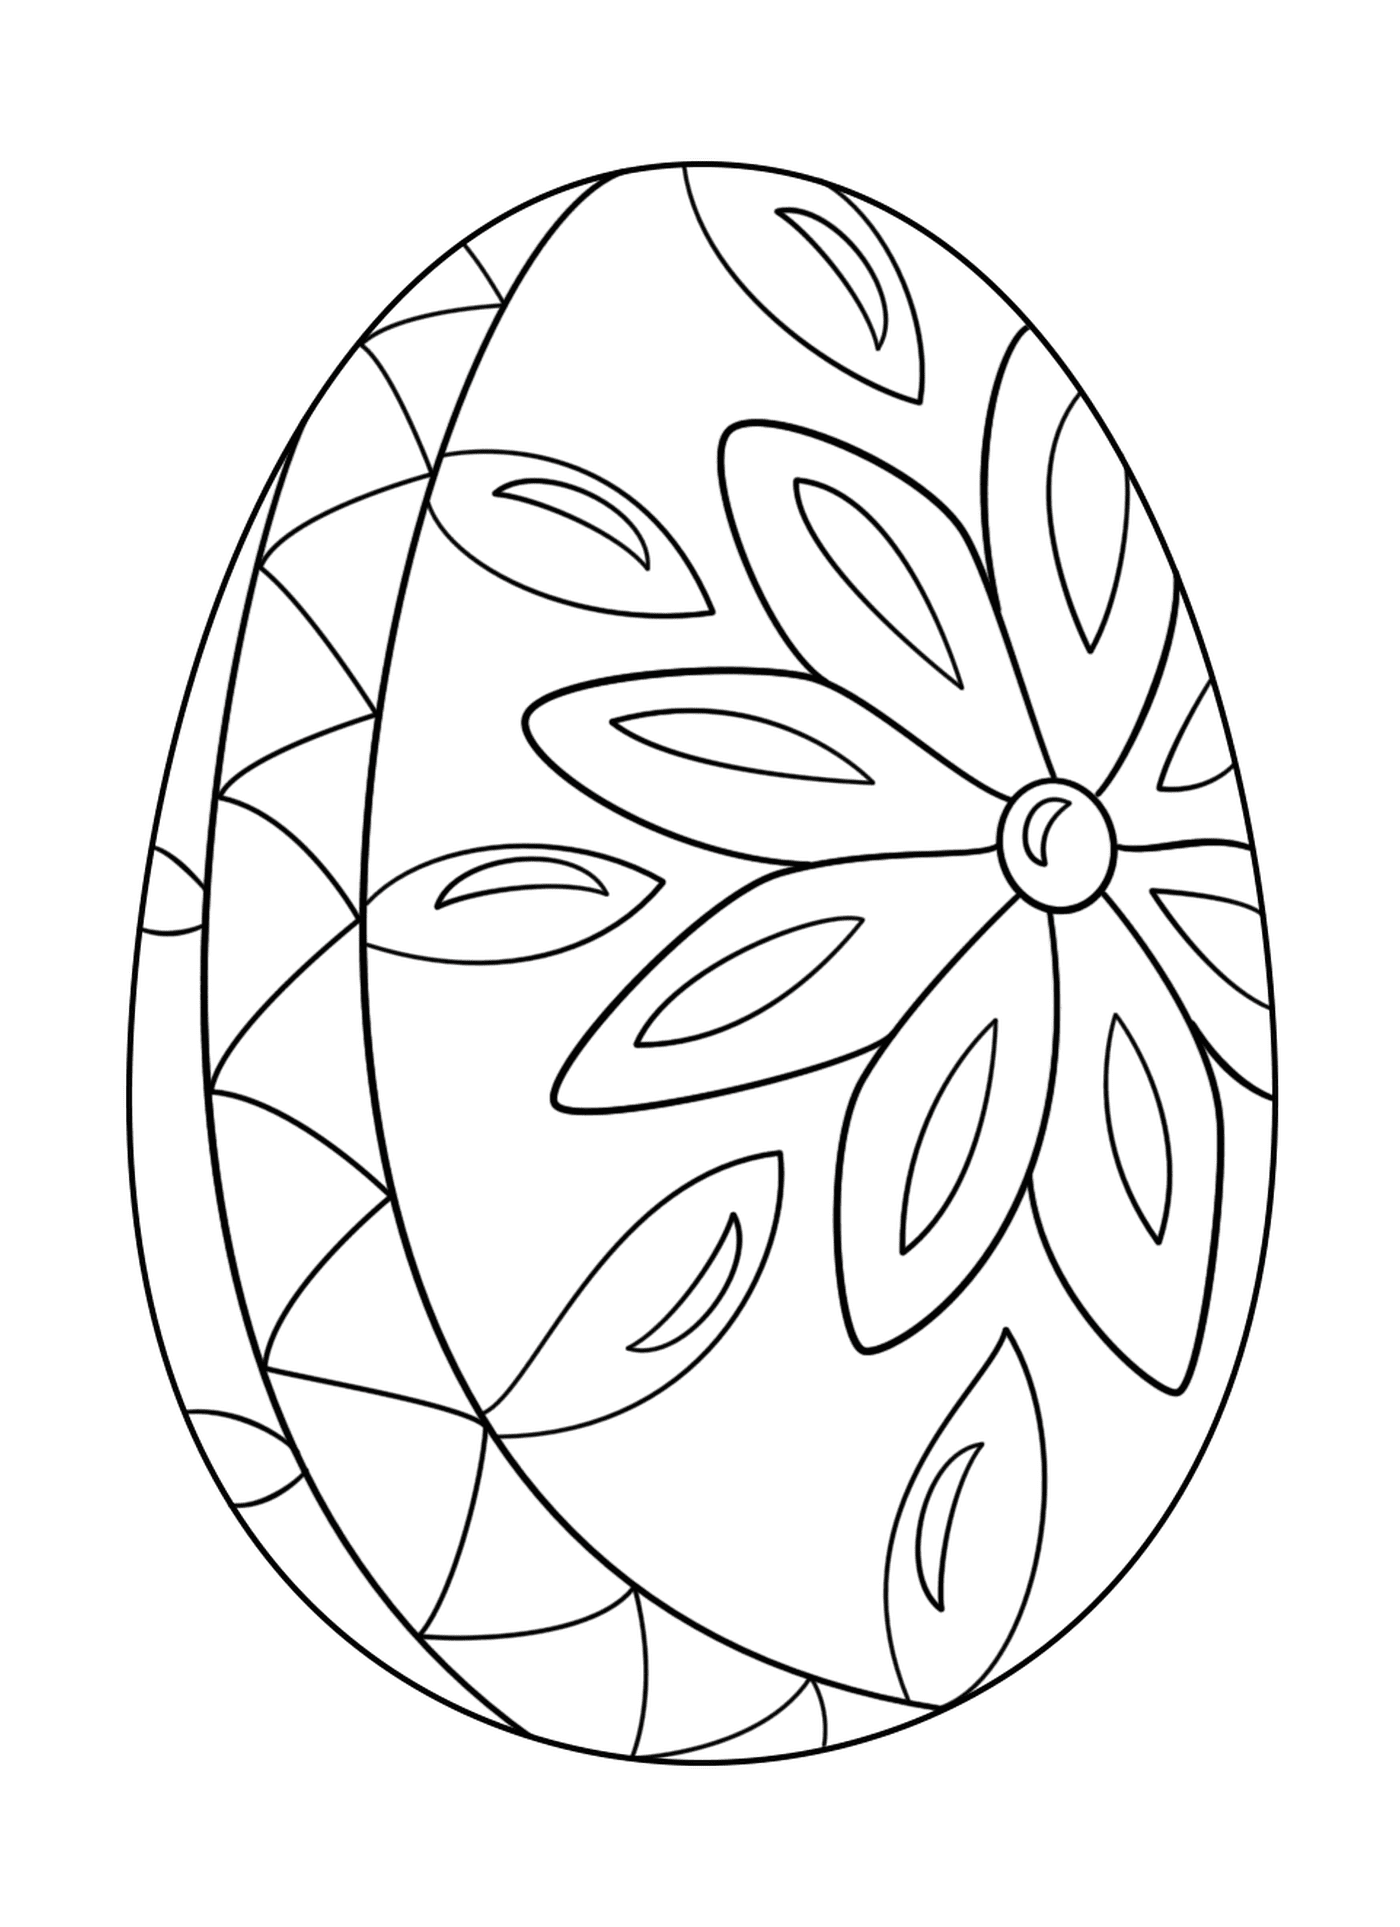  Decorative Easter Egg 